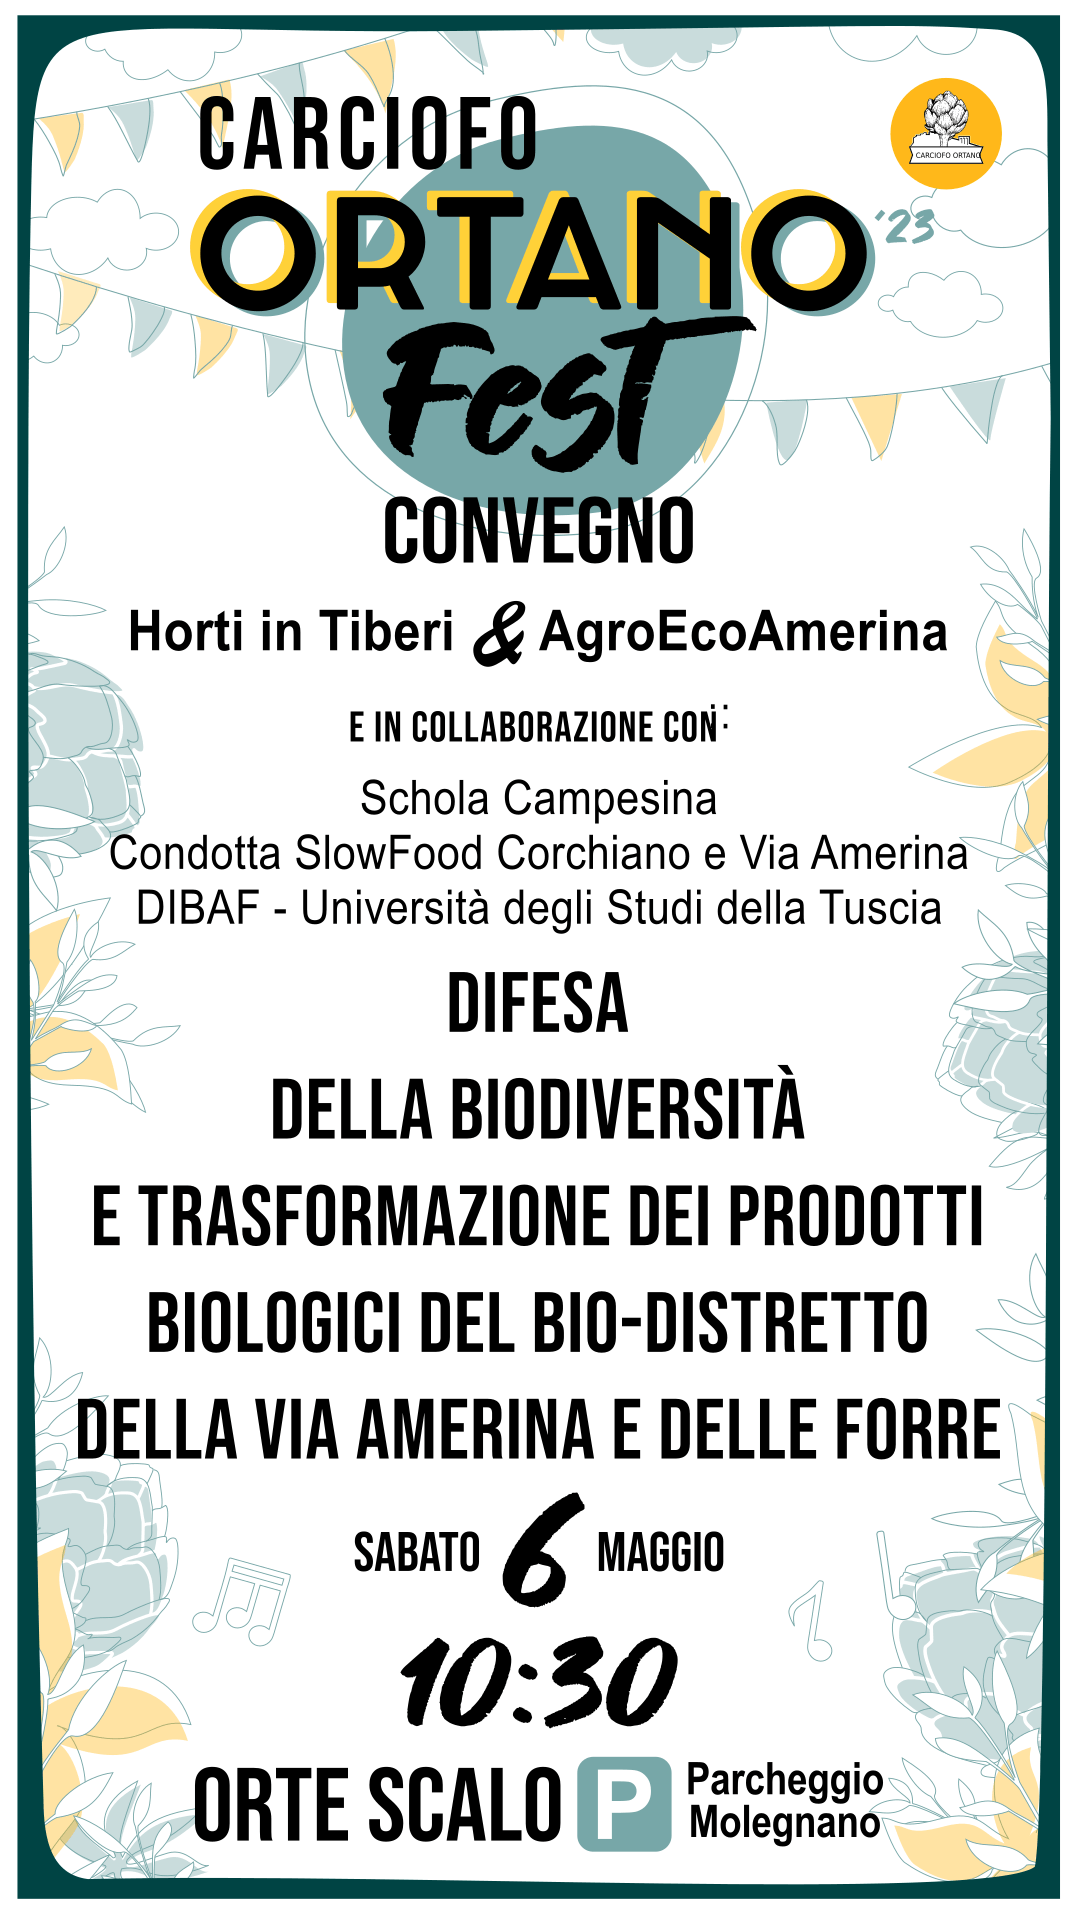 WEB-Convegno-Carciofo-ortano-fest-2023-Horti-in-Tiberi-AgroEcoAmerina-biodistretto-slow-food